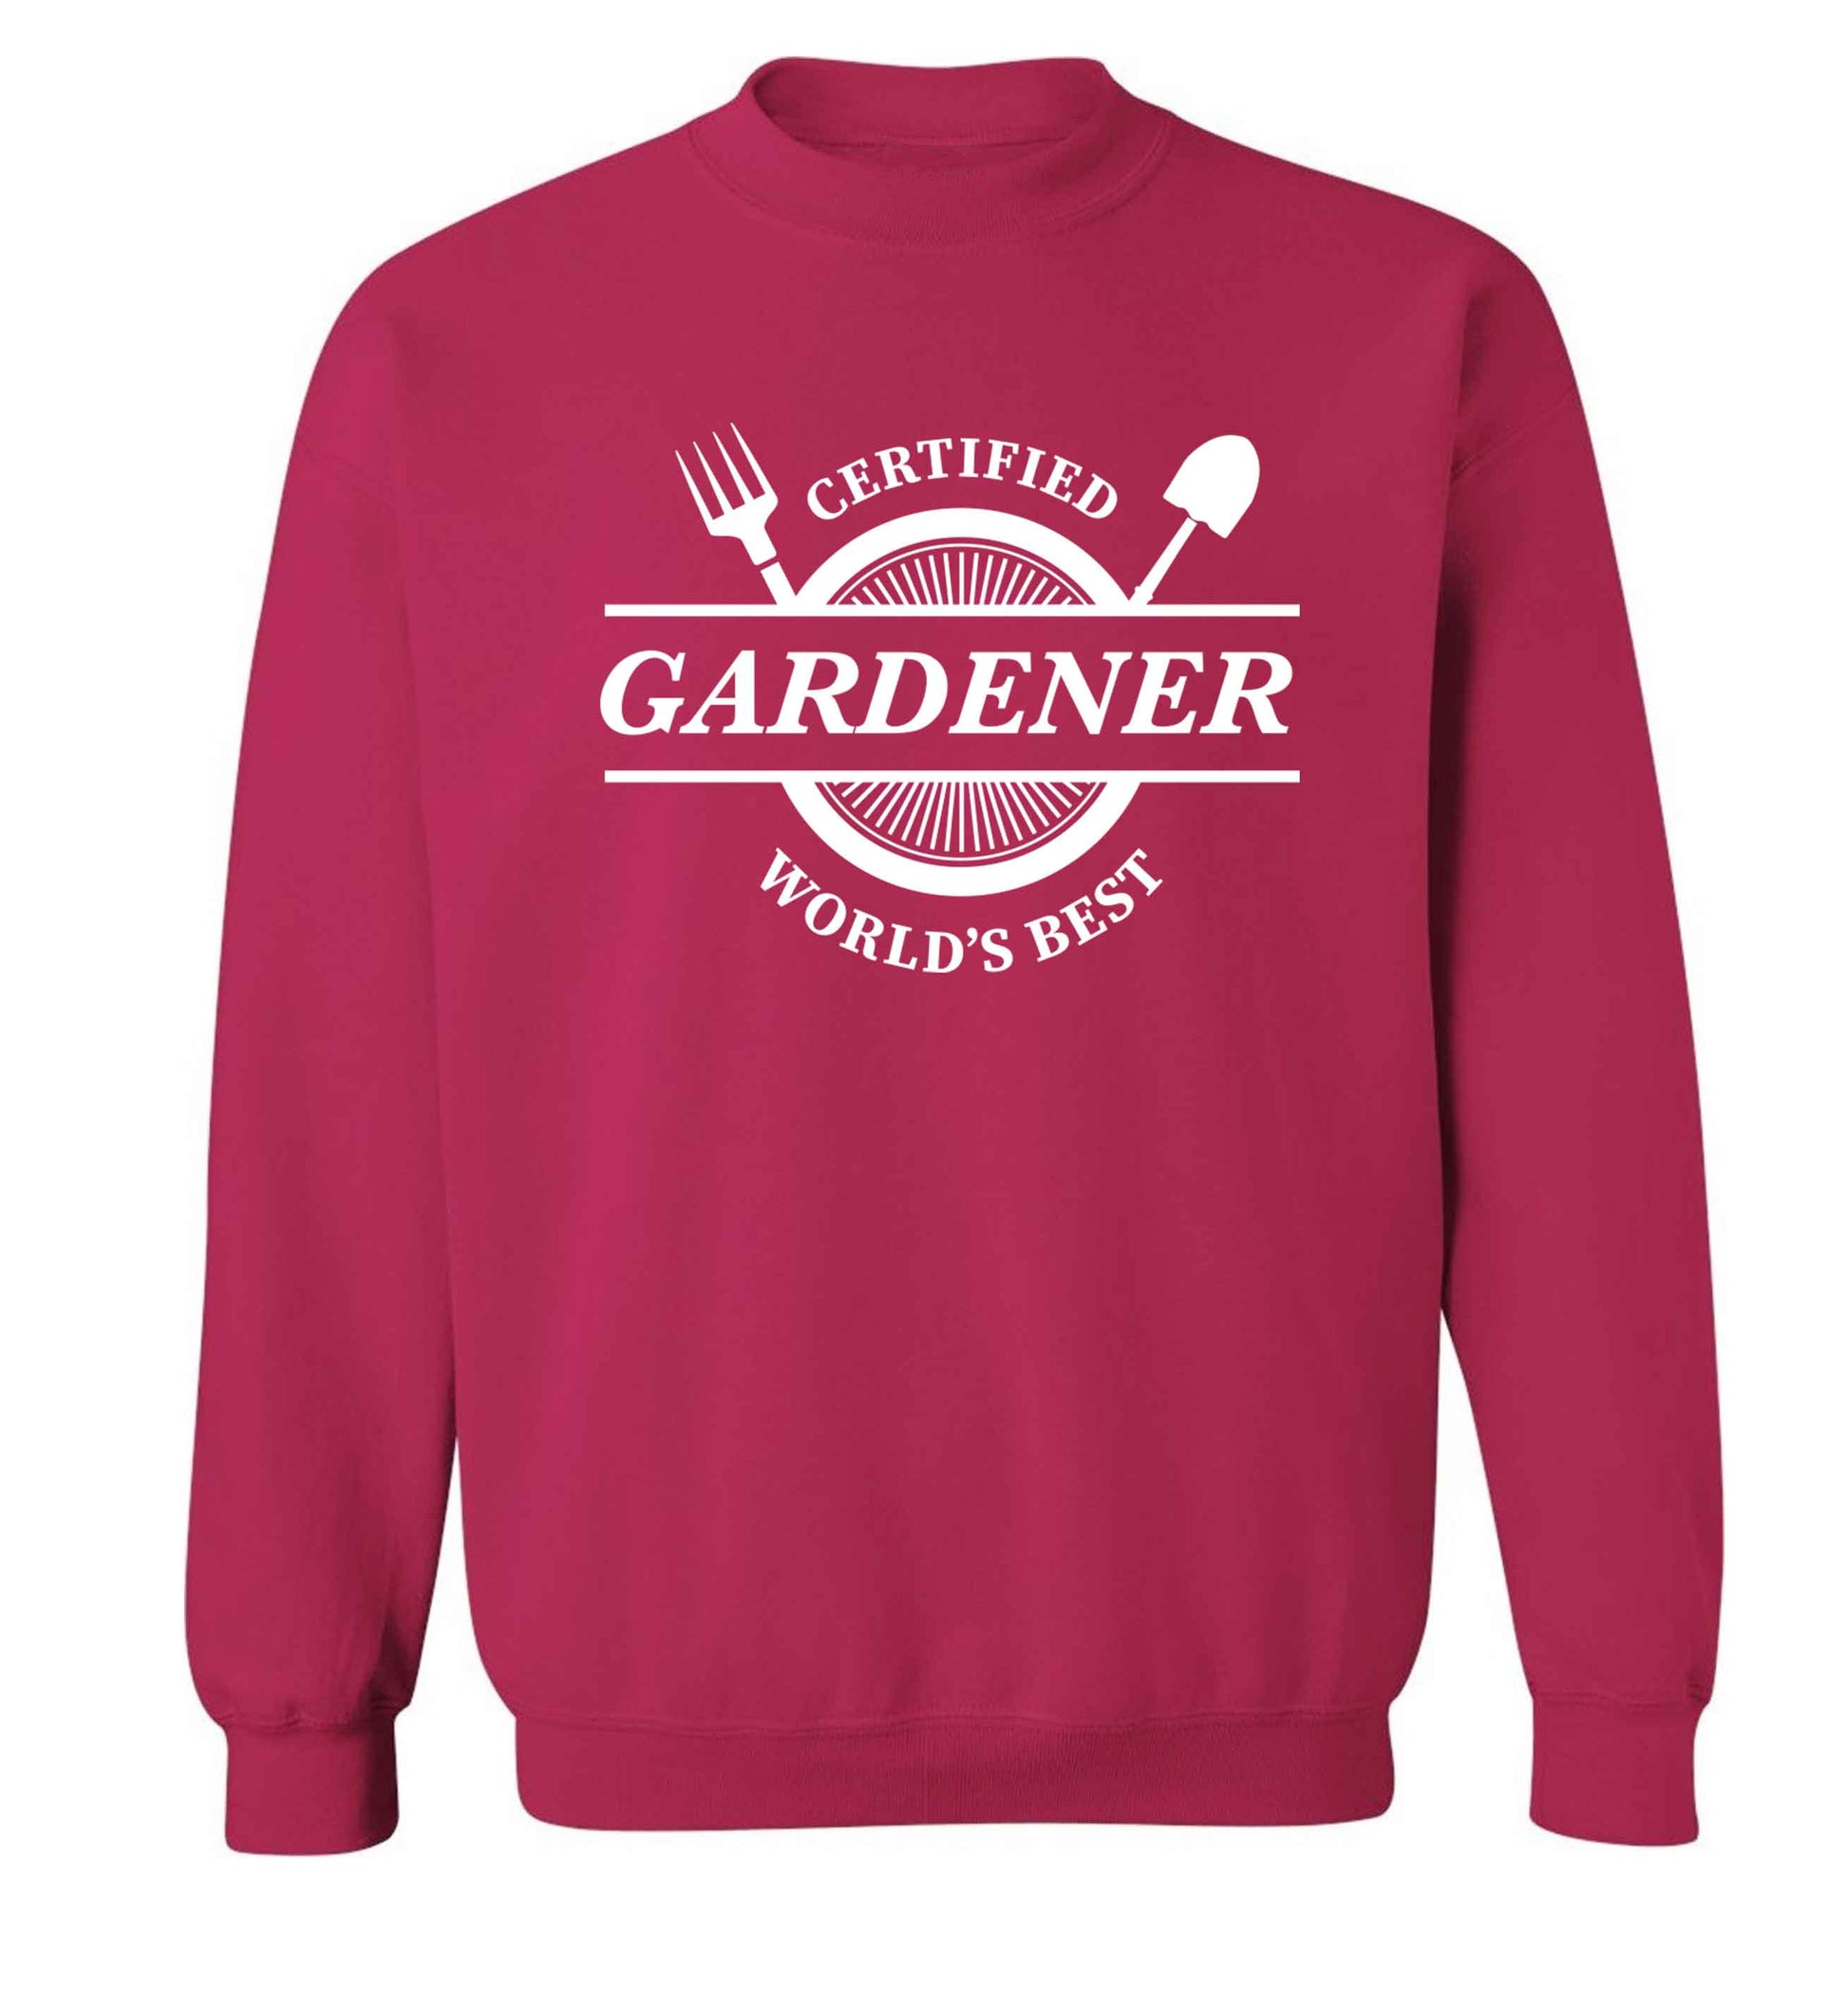 Certified gardener worlds best Adult's unisex pink Sweater 2XL